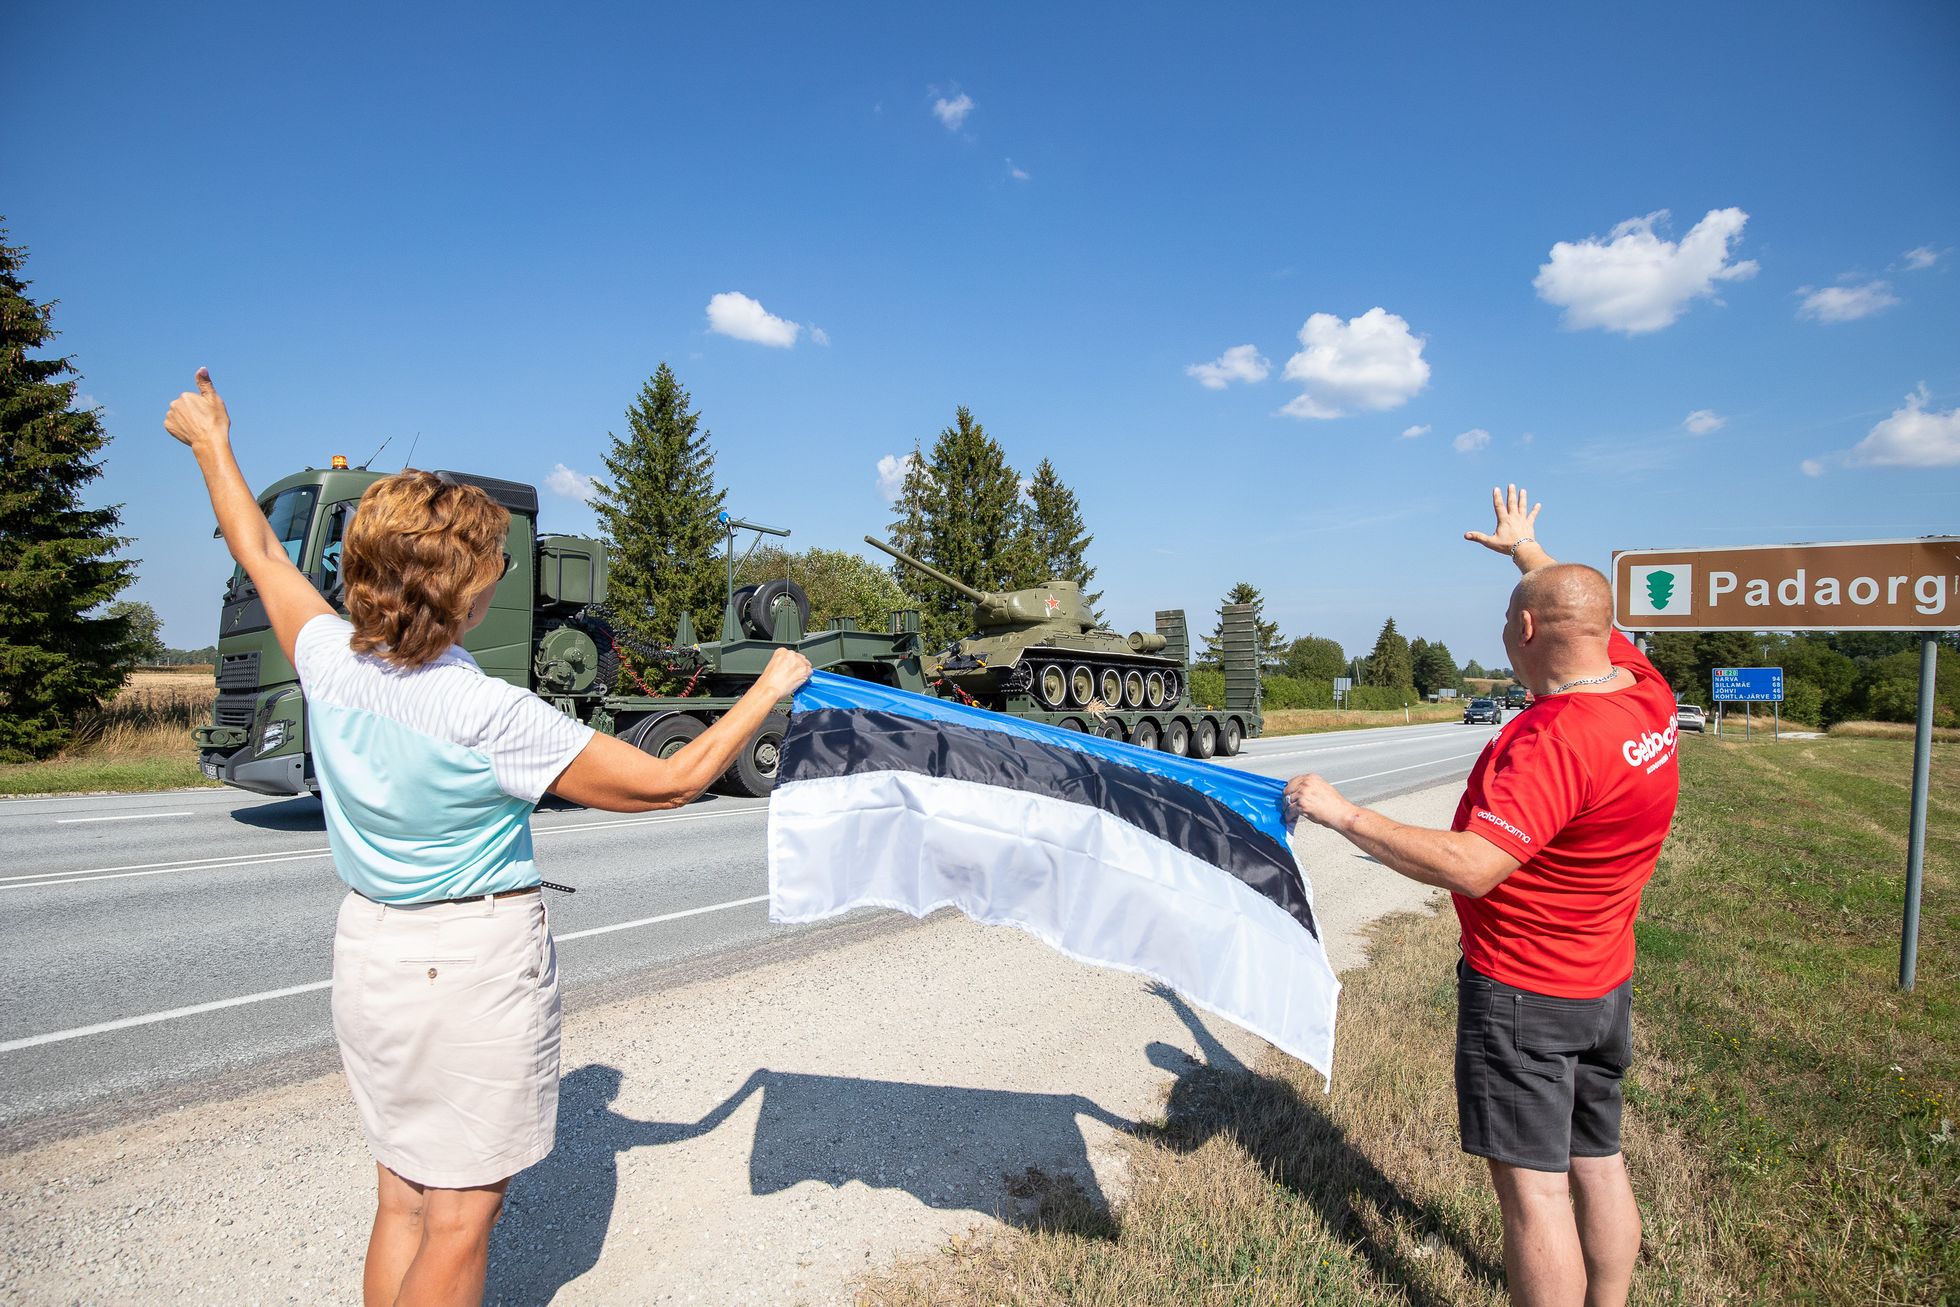 Viimsisse Eesti sõjamuuseumisse teel olnud Narva punatankile lehvitati Padaorus sinimustvalget lippu. Valitsus otsustas 2022. aasta augusti keskel eemaldada Narvast ja selle ümbrusest kõik Nõukogude sõjamonumendid, sealhulgas T-34 tanki.